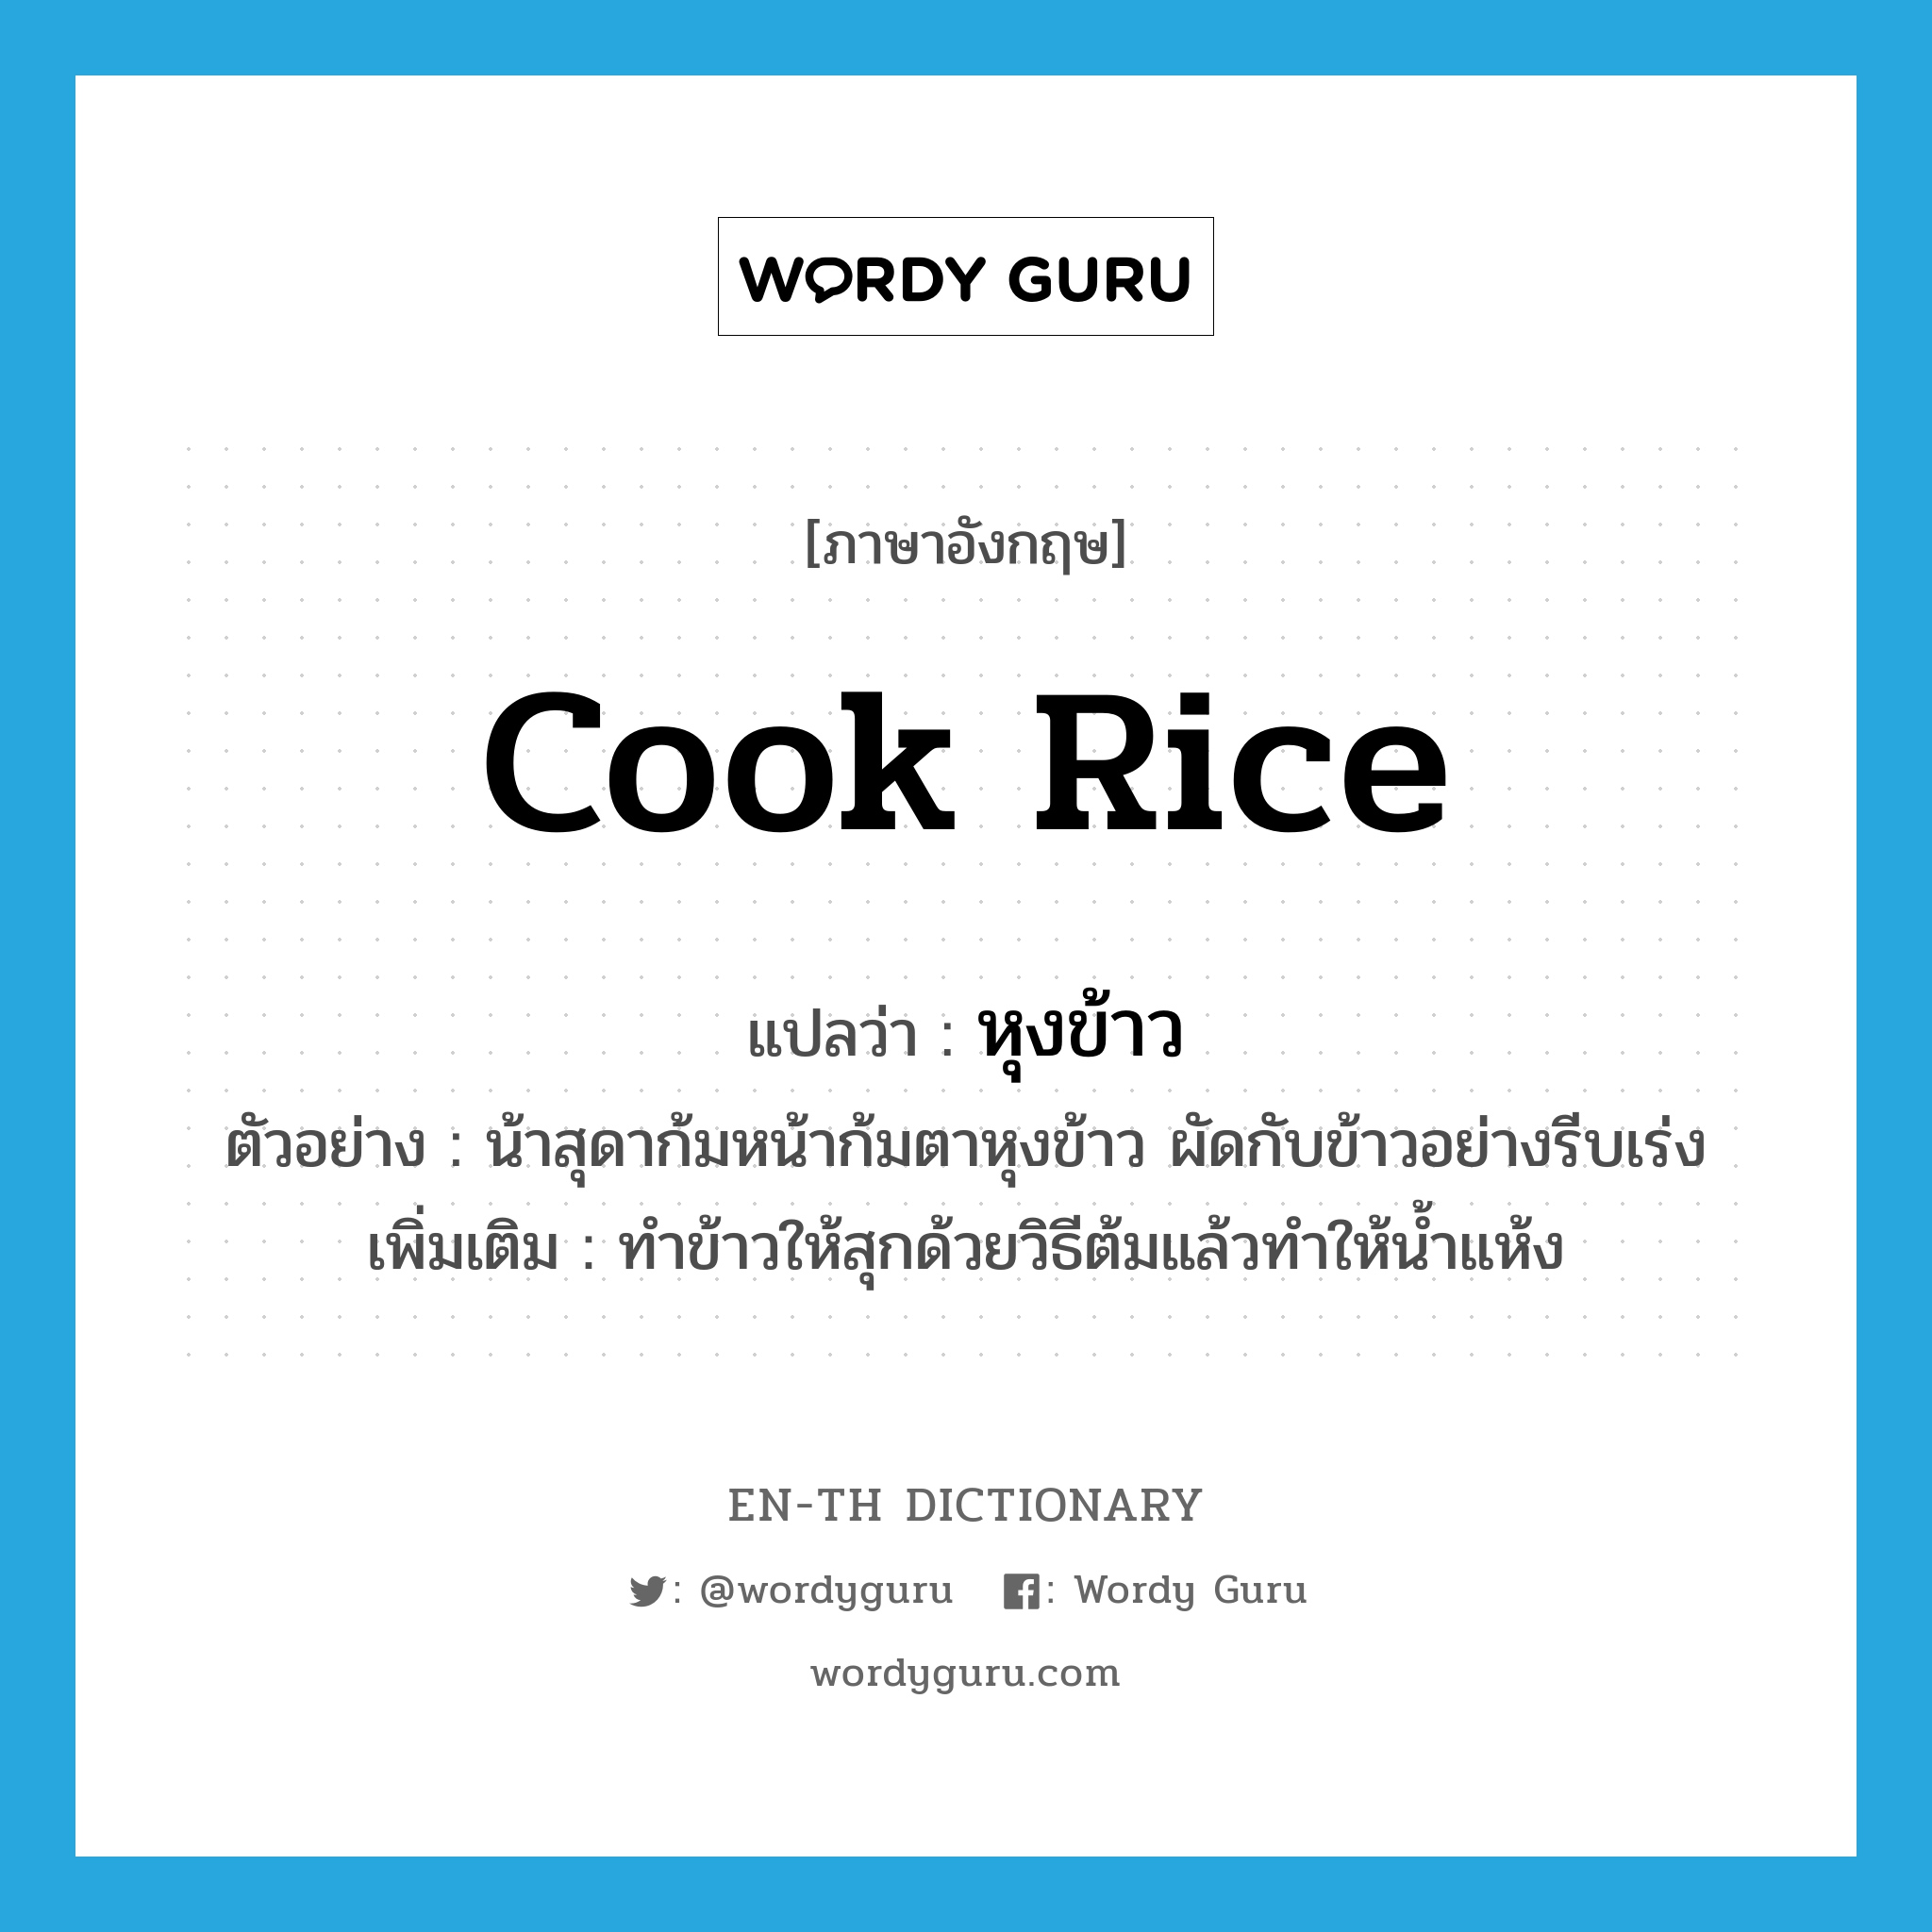 หุงข้าว ภาษาอังกฤษ?, คำศัพท์ภาษาอังกฤษ หุงข้าว แปลว่า cook rice ประเภท V ตัวอย่าง น้าสุดาก้มหน้าก้มตาหุงข้าว ผัดกับข้าวอย่างรีบเร่ง เพิ่มเติม ทำข้าวให้สุกด้วยวิธีต้มแล้วทำให้น้ำแห้ง หมวด V